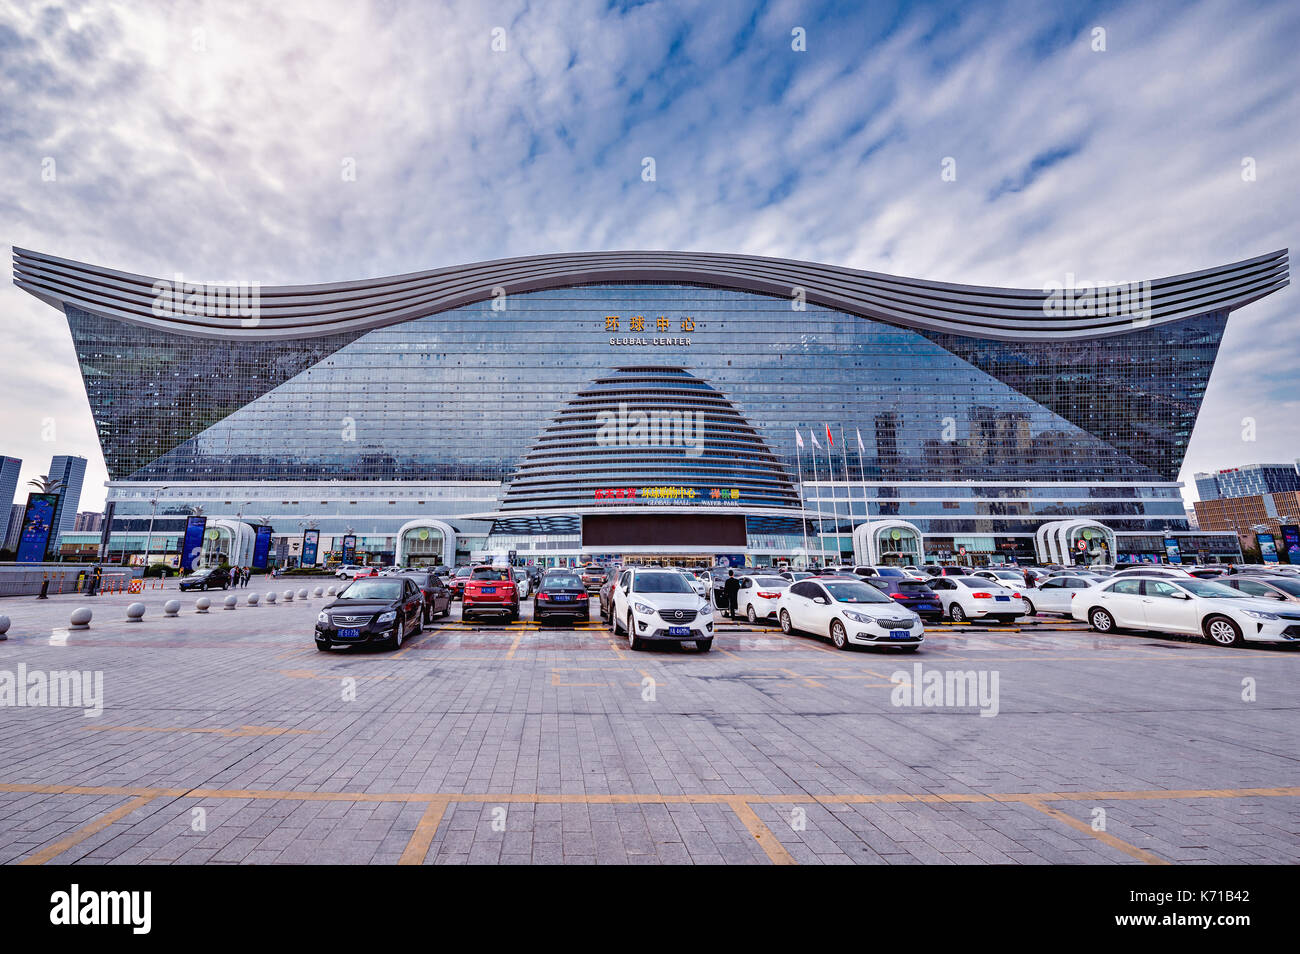 Chengdu, Cina - 29 ottobre 2016: nuovo secolo centro globale è di 100 metri di altezza con 1.700.000 metri quadrati di spazio, rendendolo il mondo larg Foto Stock